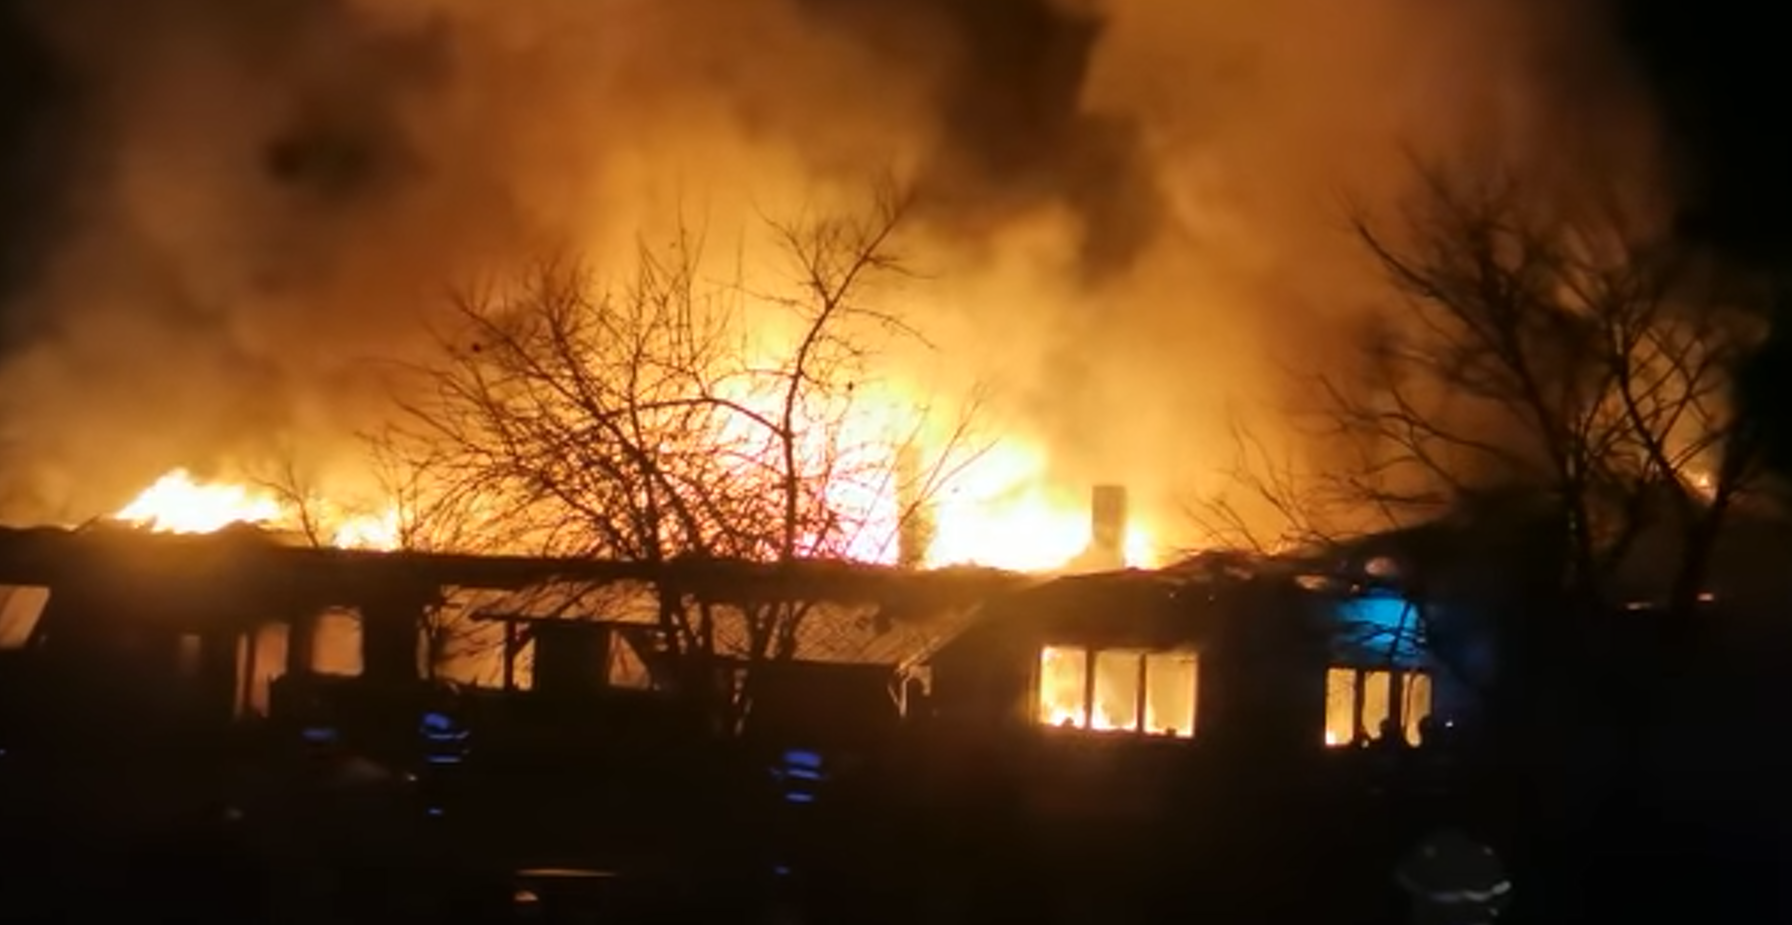 Harghita: Persoanele afectate de incendiul de la Gălăuțaș înnoptează la rude și la vecini. Autoritățile caută soluții de ajutorare